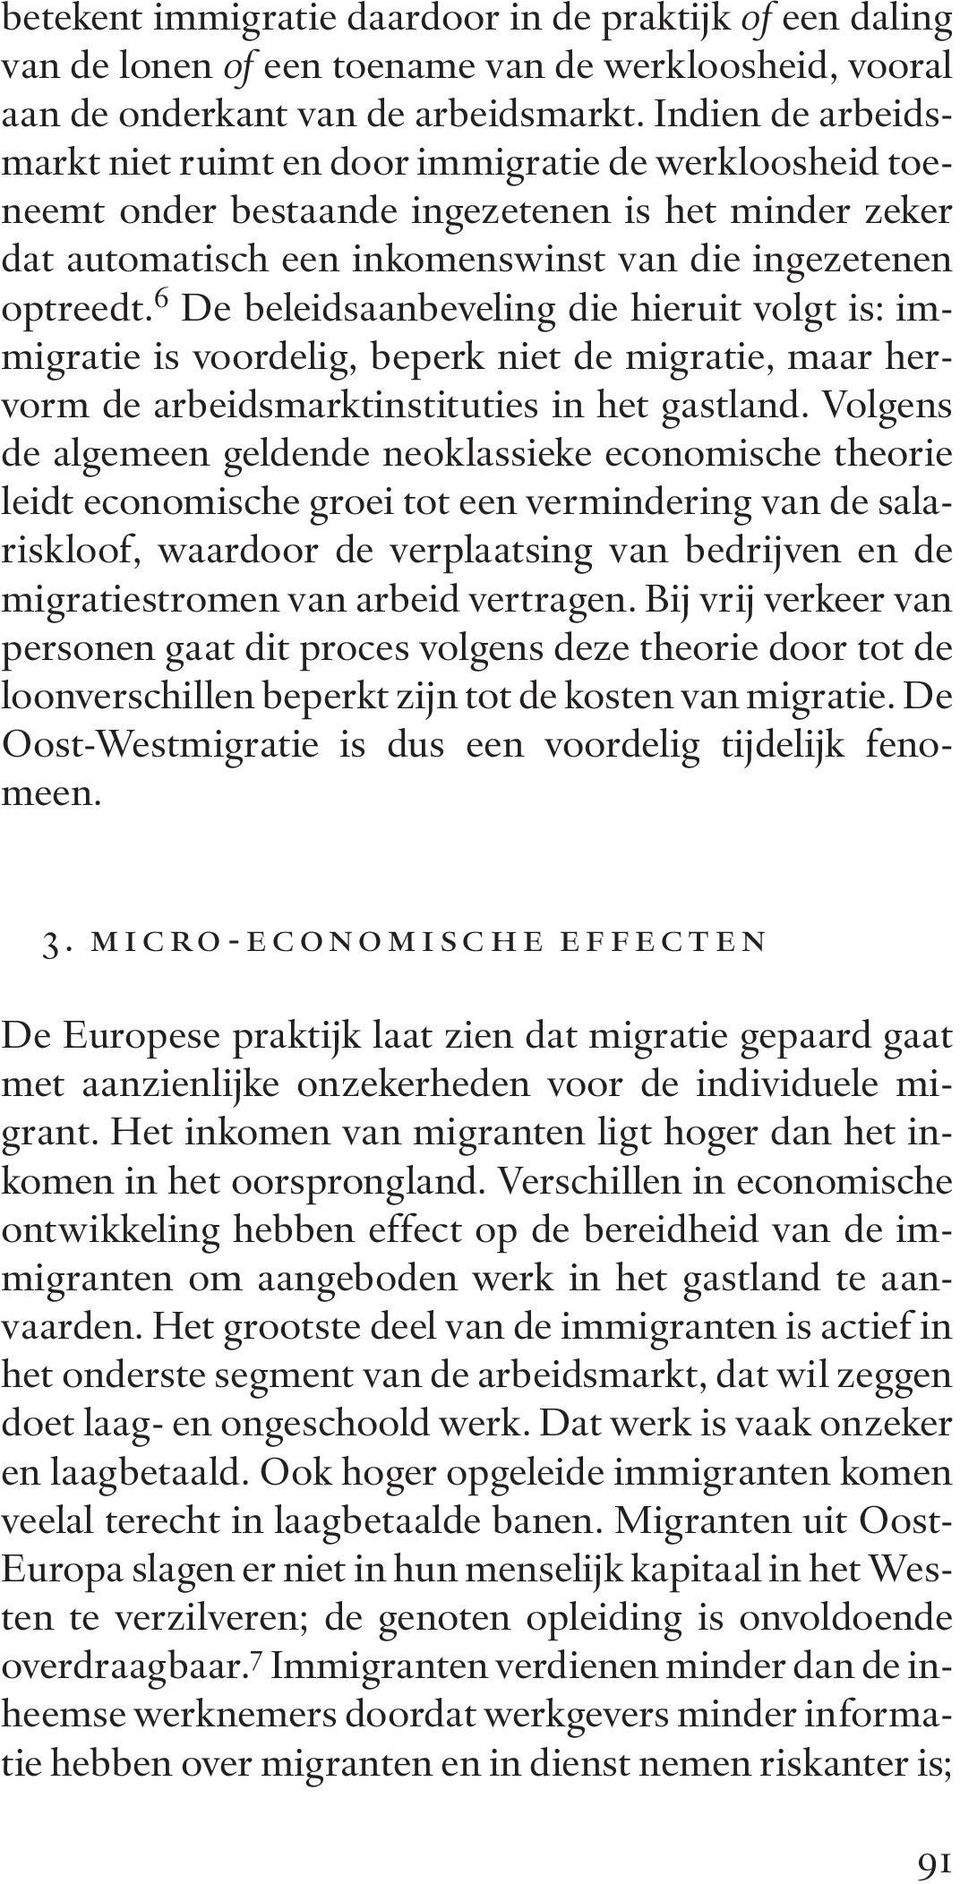 6 De beleidsaanbeveling die hieruit volgt is: im - migratie is voordelig, beperk niet de migratie, maar hervorm de arbeidsmarktinstituties in het gastland.